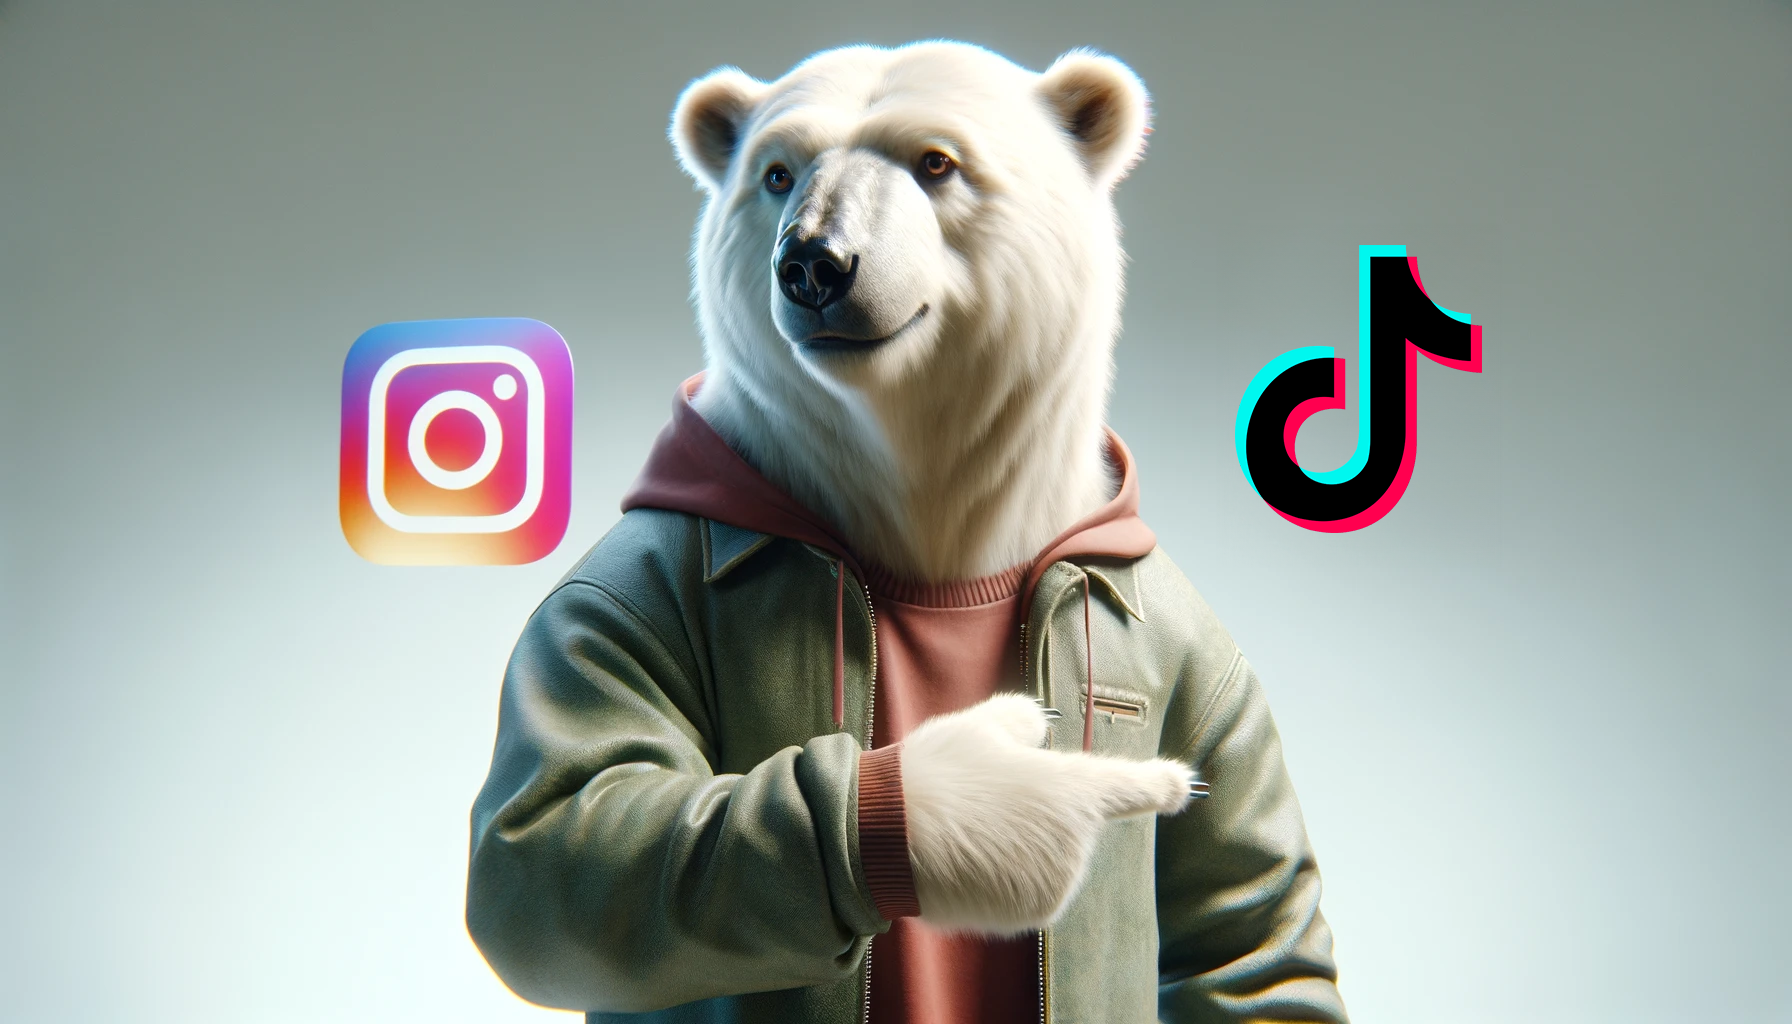 Bär fordert zum folgen auf Instagram und TikTok auf